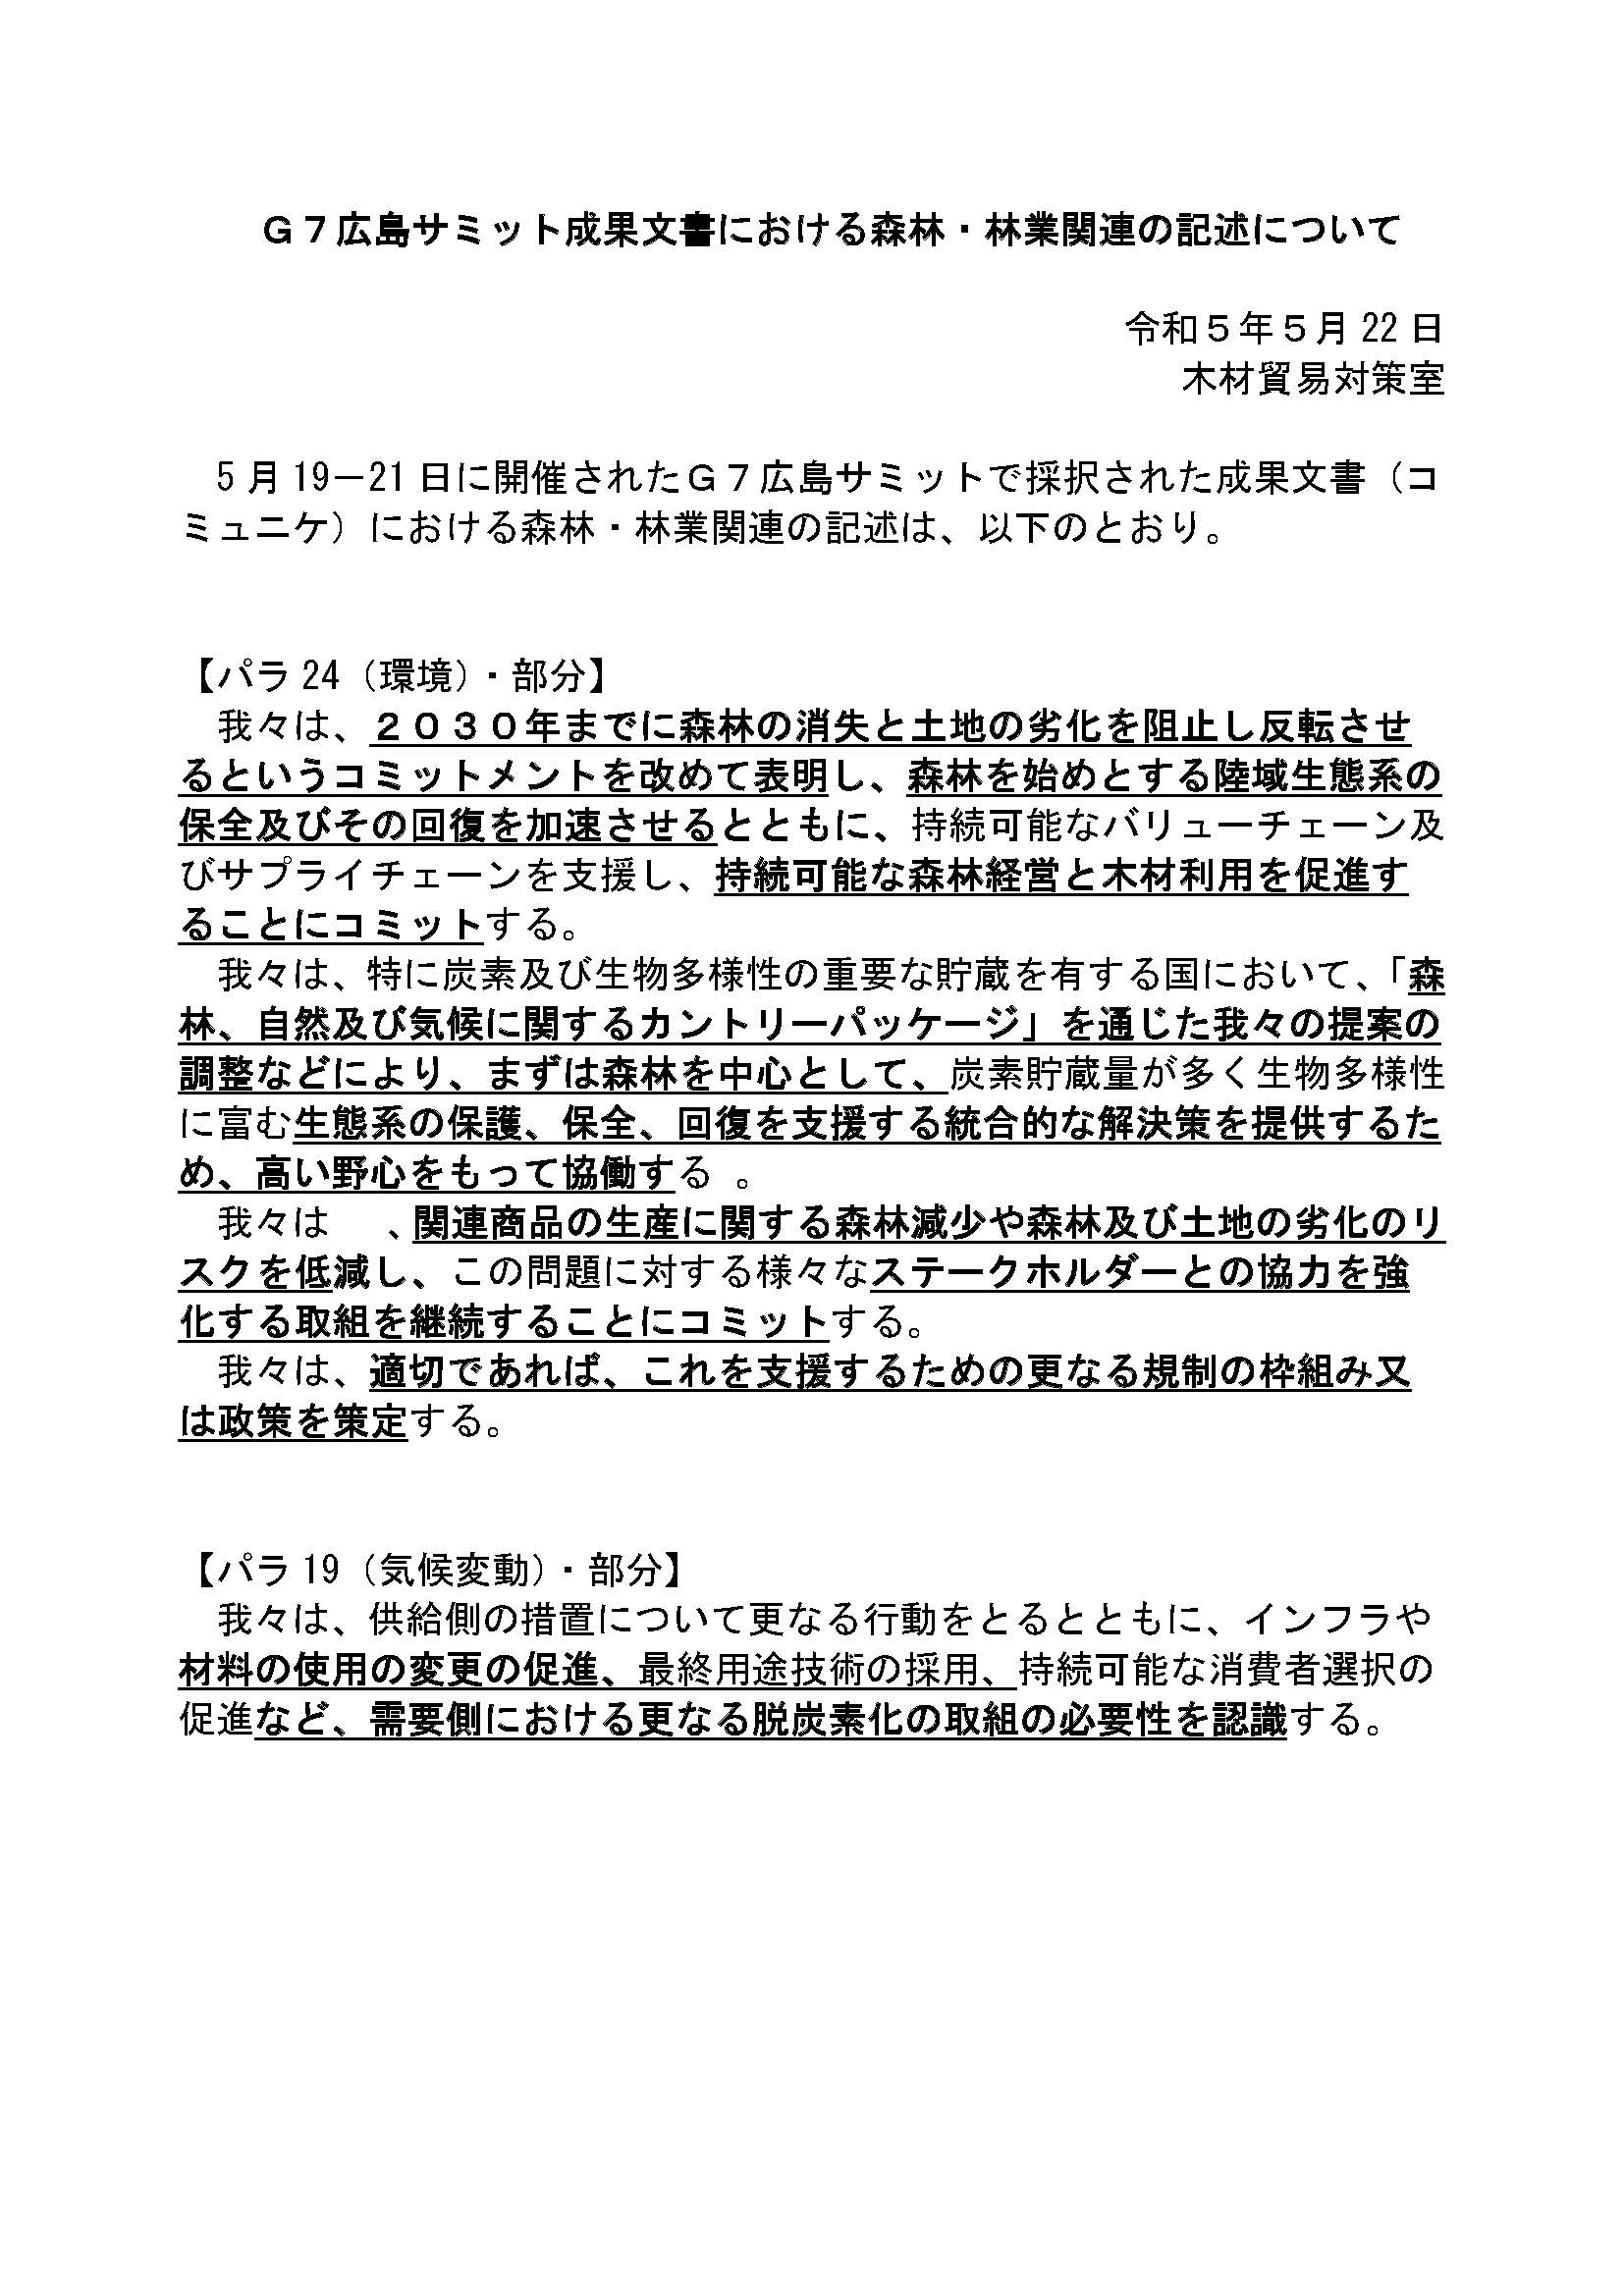 Ｇ７広島 サミット成果文書に森林・林業関連の内容が記述されました